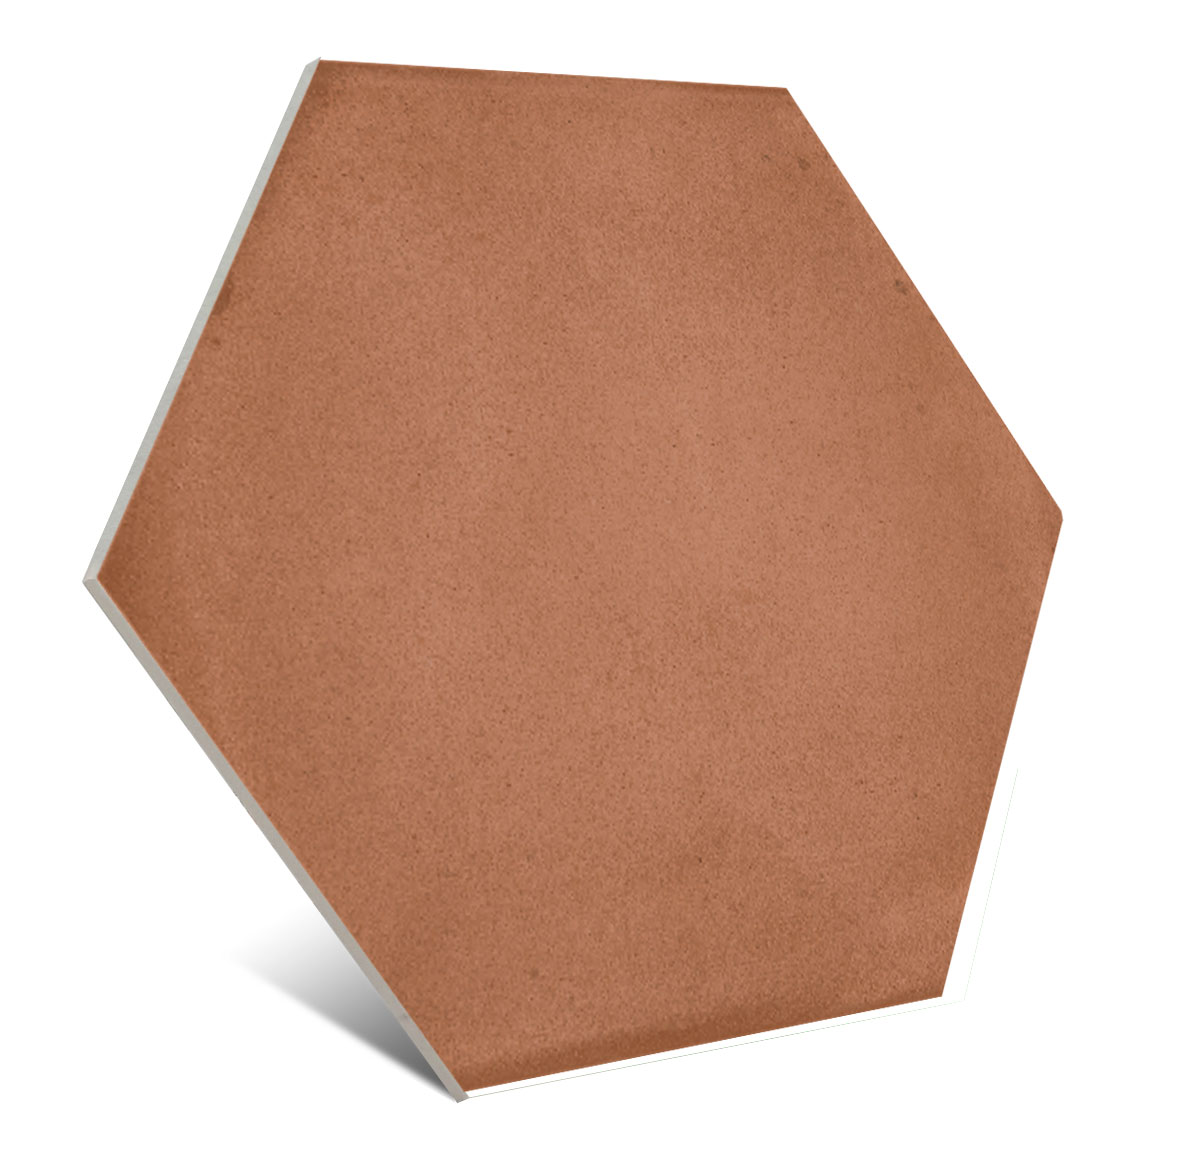 Hexagon Clay Salmón 17,5X20,2 de APE